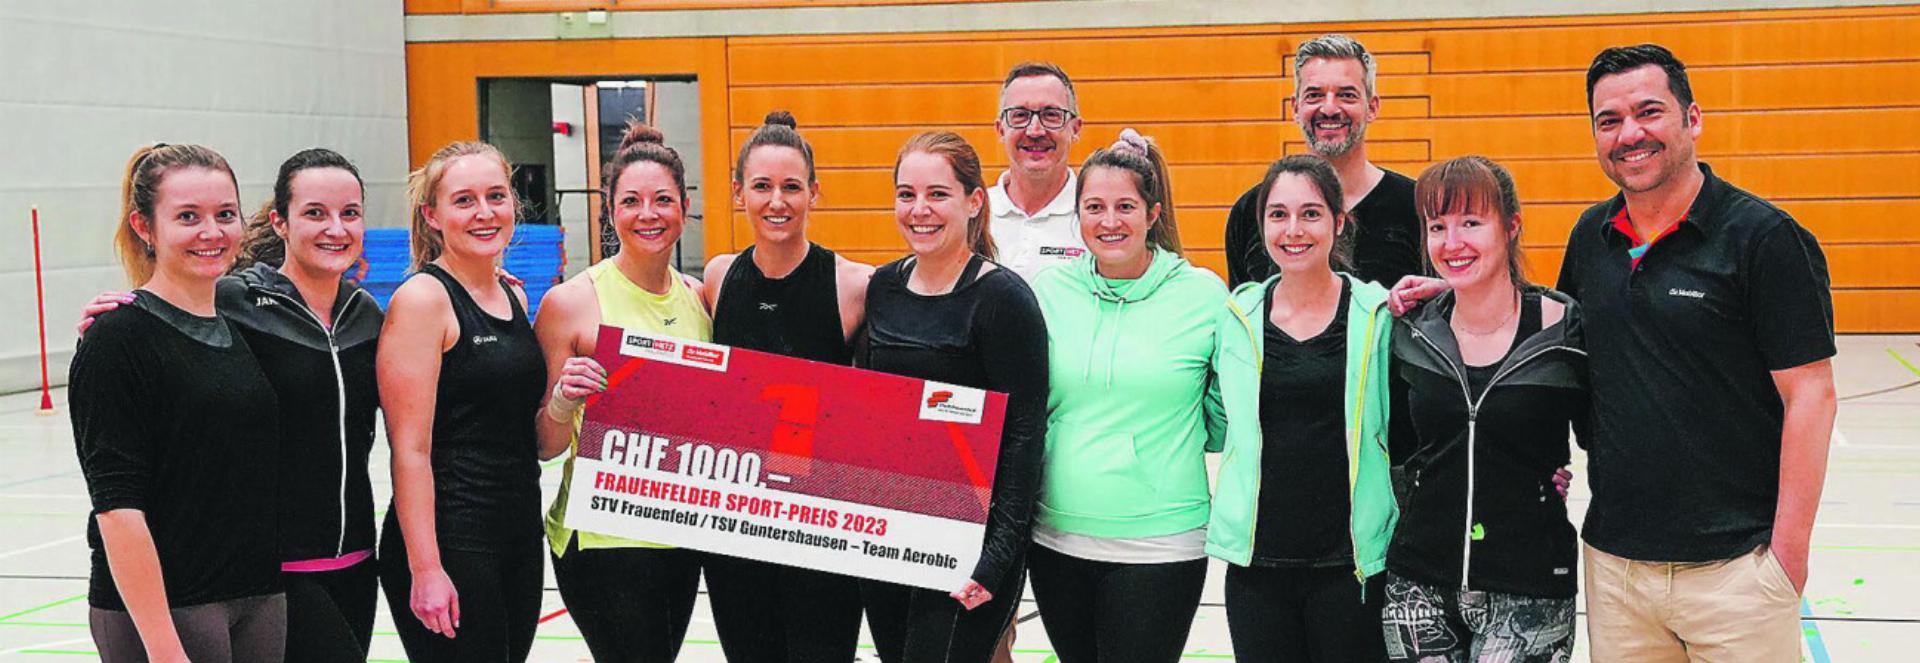 Das Team-Aerobic Frauenfeld-Guntershausen freut sich über den Frauenfelder Sportpreis im Wert von 1000 Franken. Bild: zvg